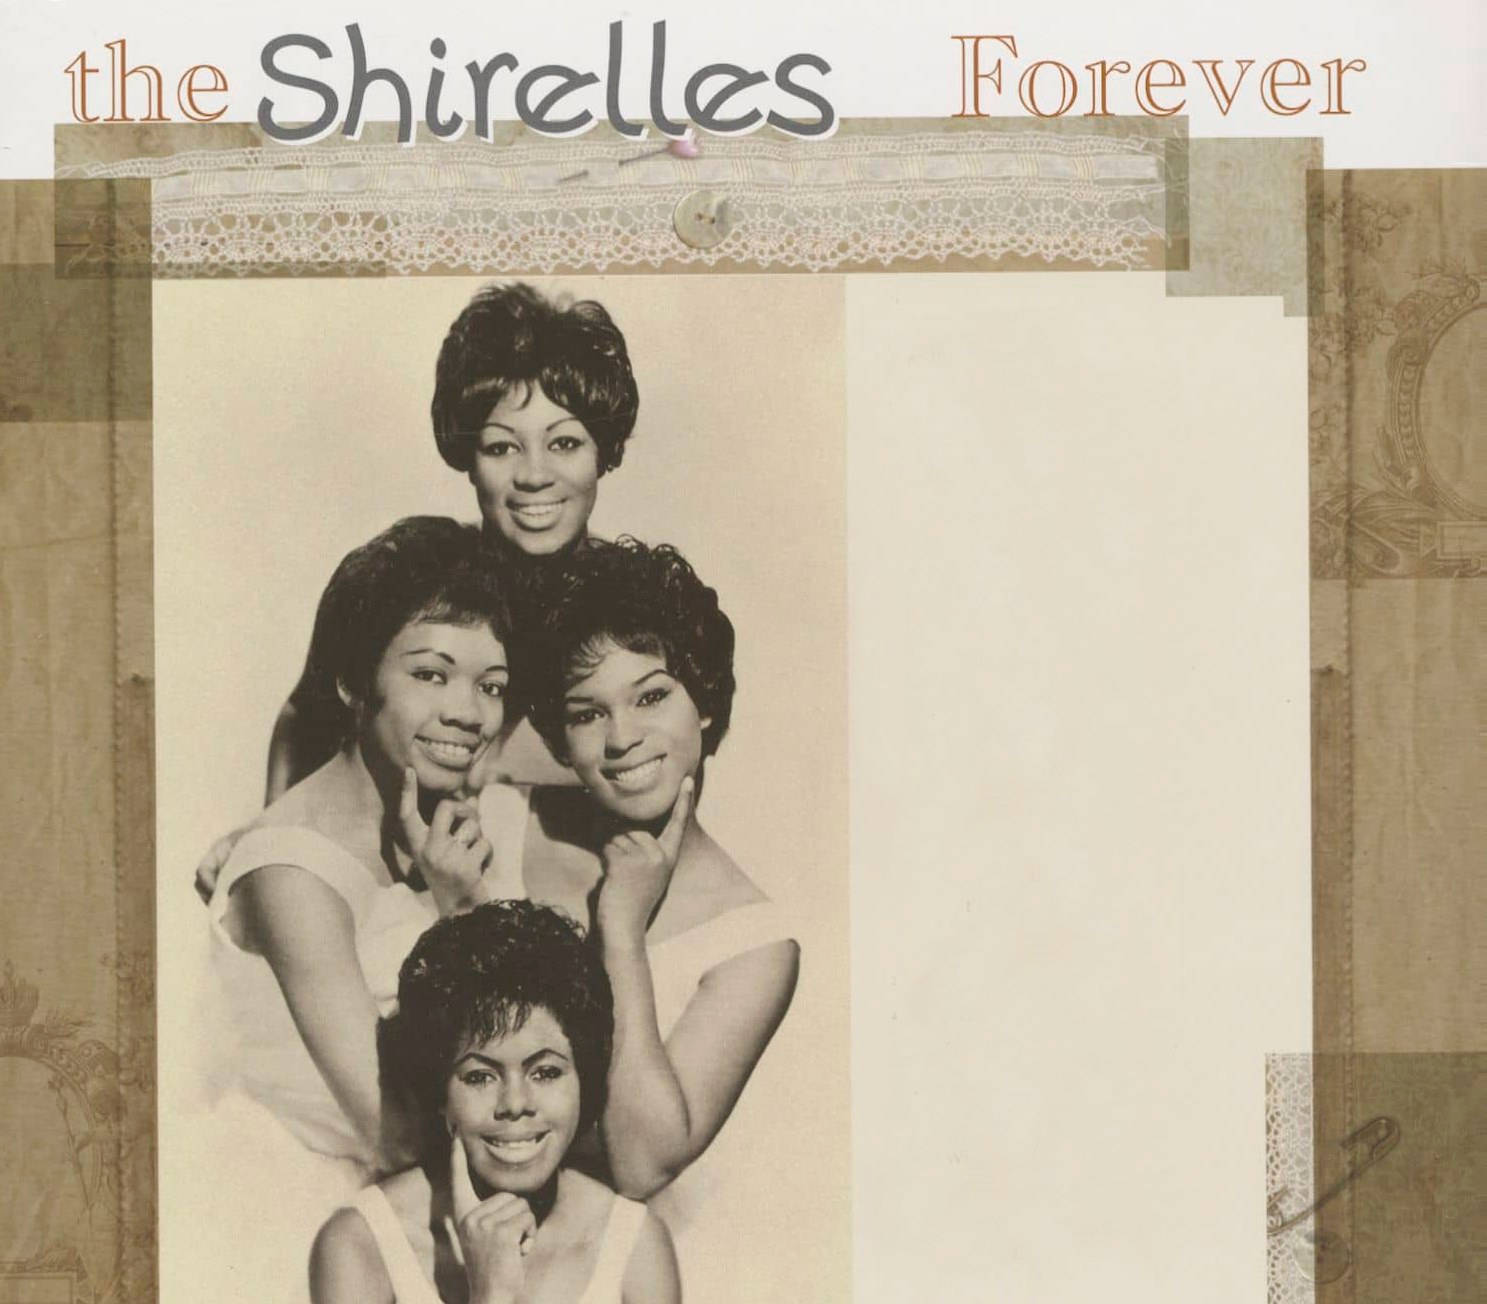 The Shirelles Forever 2013 Vinyl Remastered Wallpaper